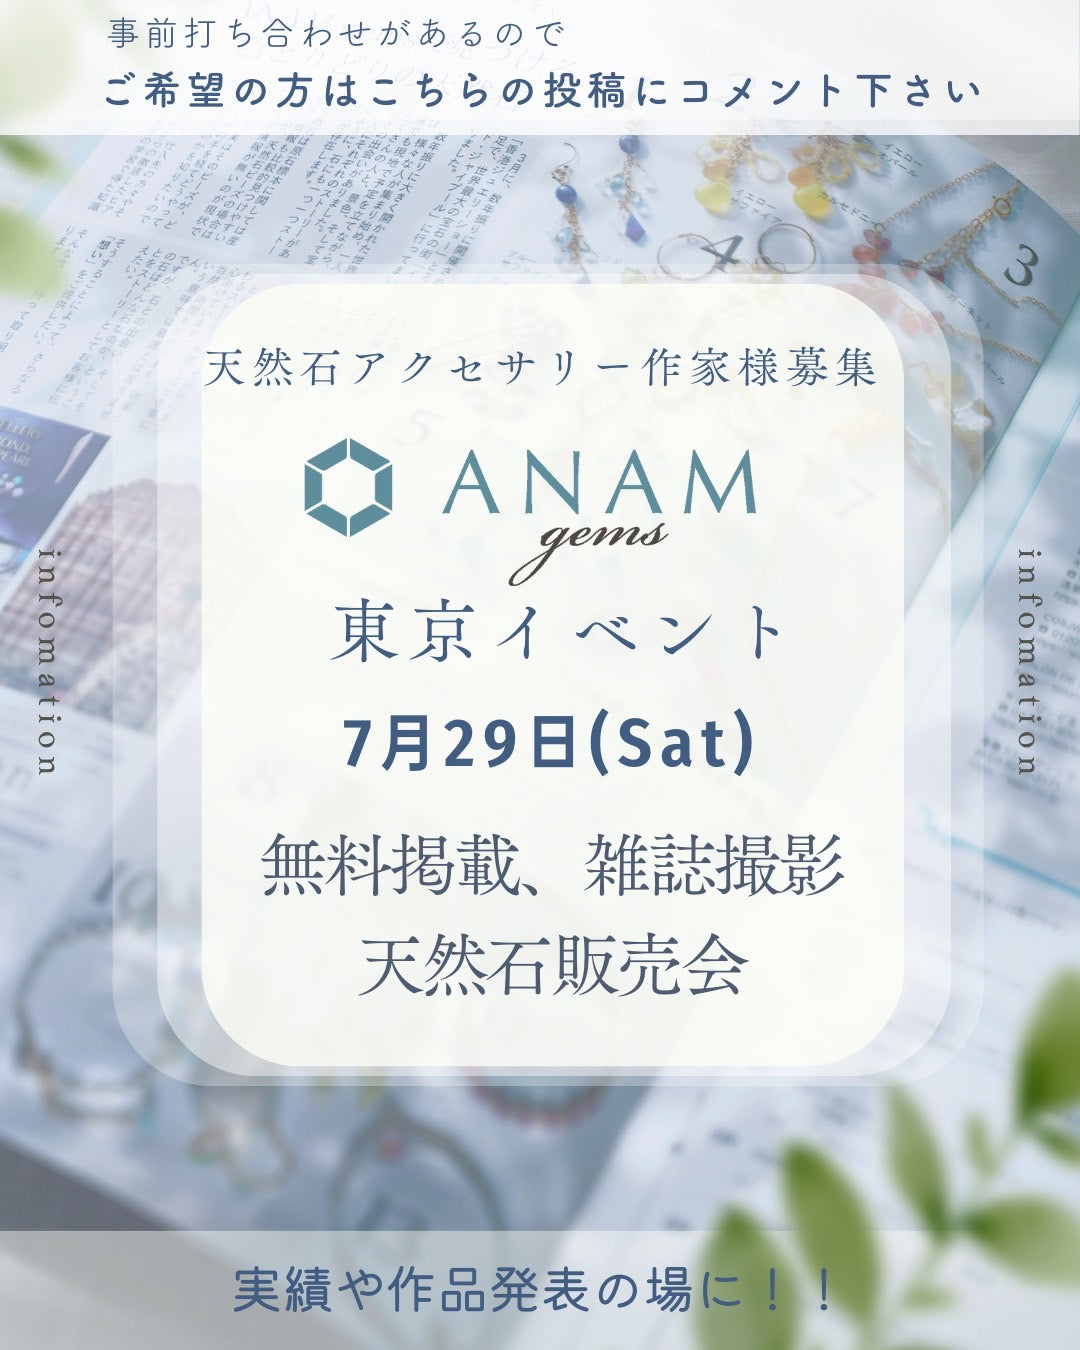 ANAM gems東京イベント開催のお知らせ